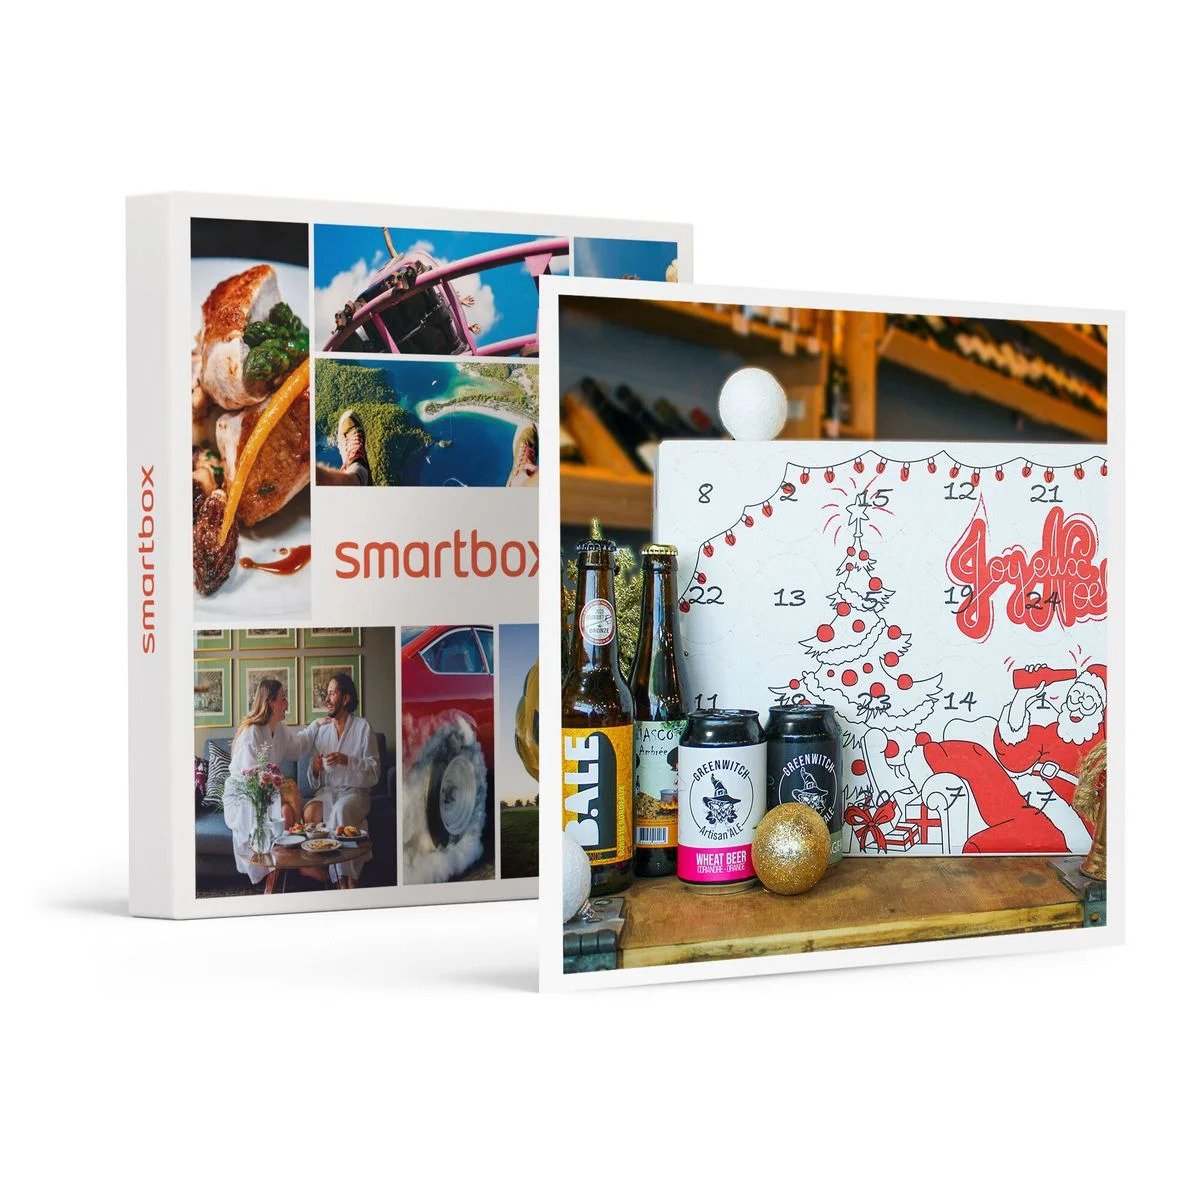 Calendrier de l’Avent : 24 bières artisanales françaises livrées à domicile – SMARTBOX – Coffret Cadeau Gastronomie